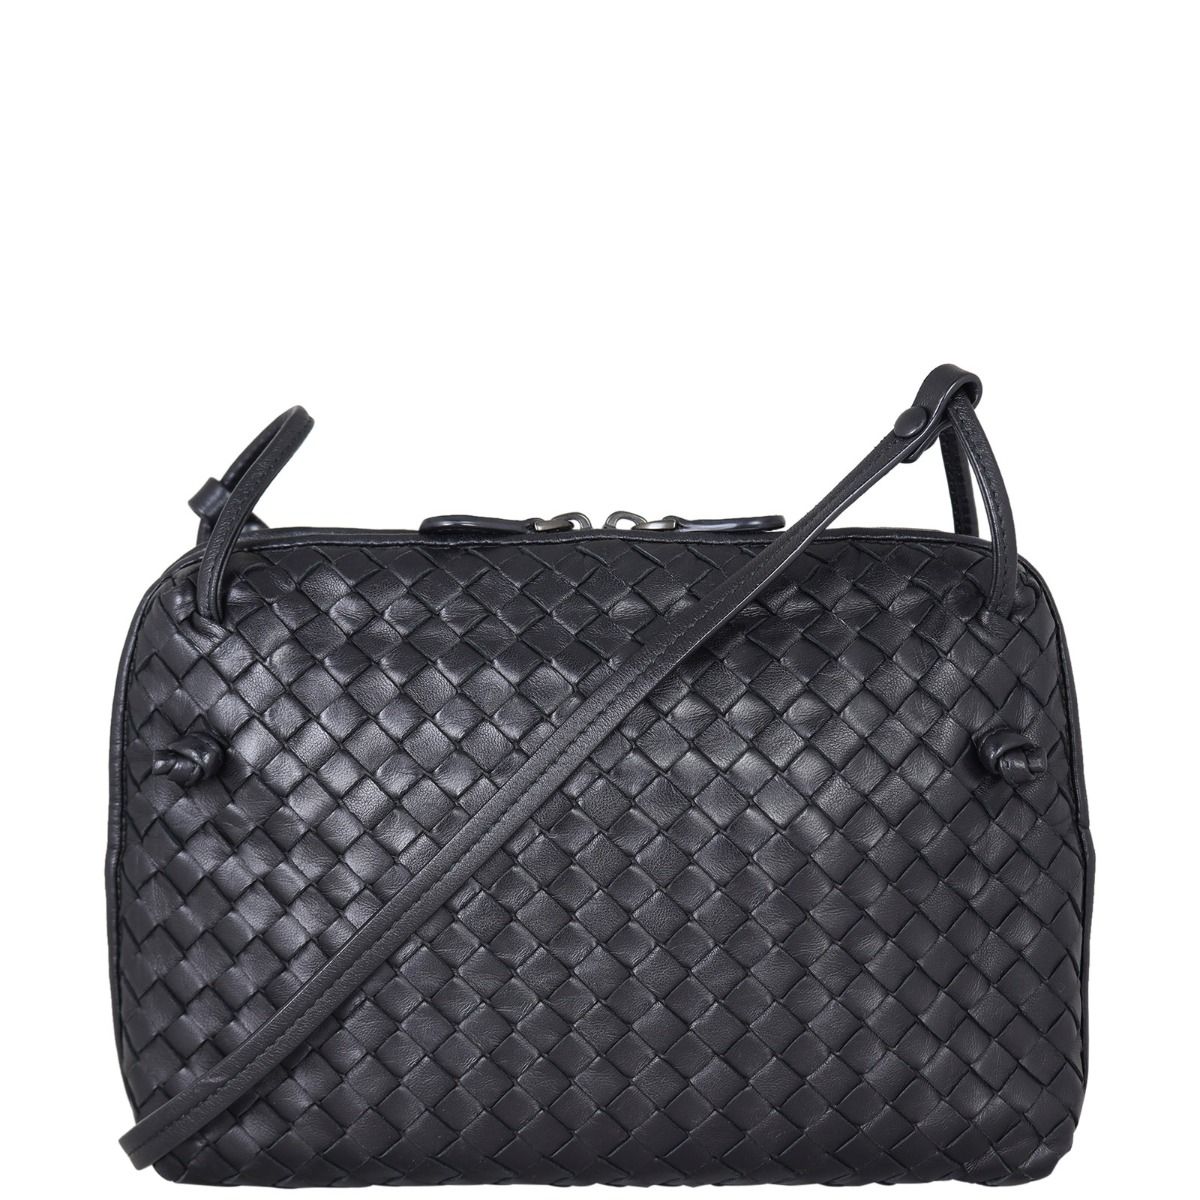 Bottega Veneta Black Intrecciato Leather Double Zip Nodini Crossbody Bag  Bottega Veneta